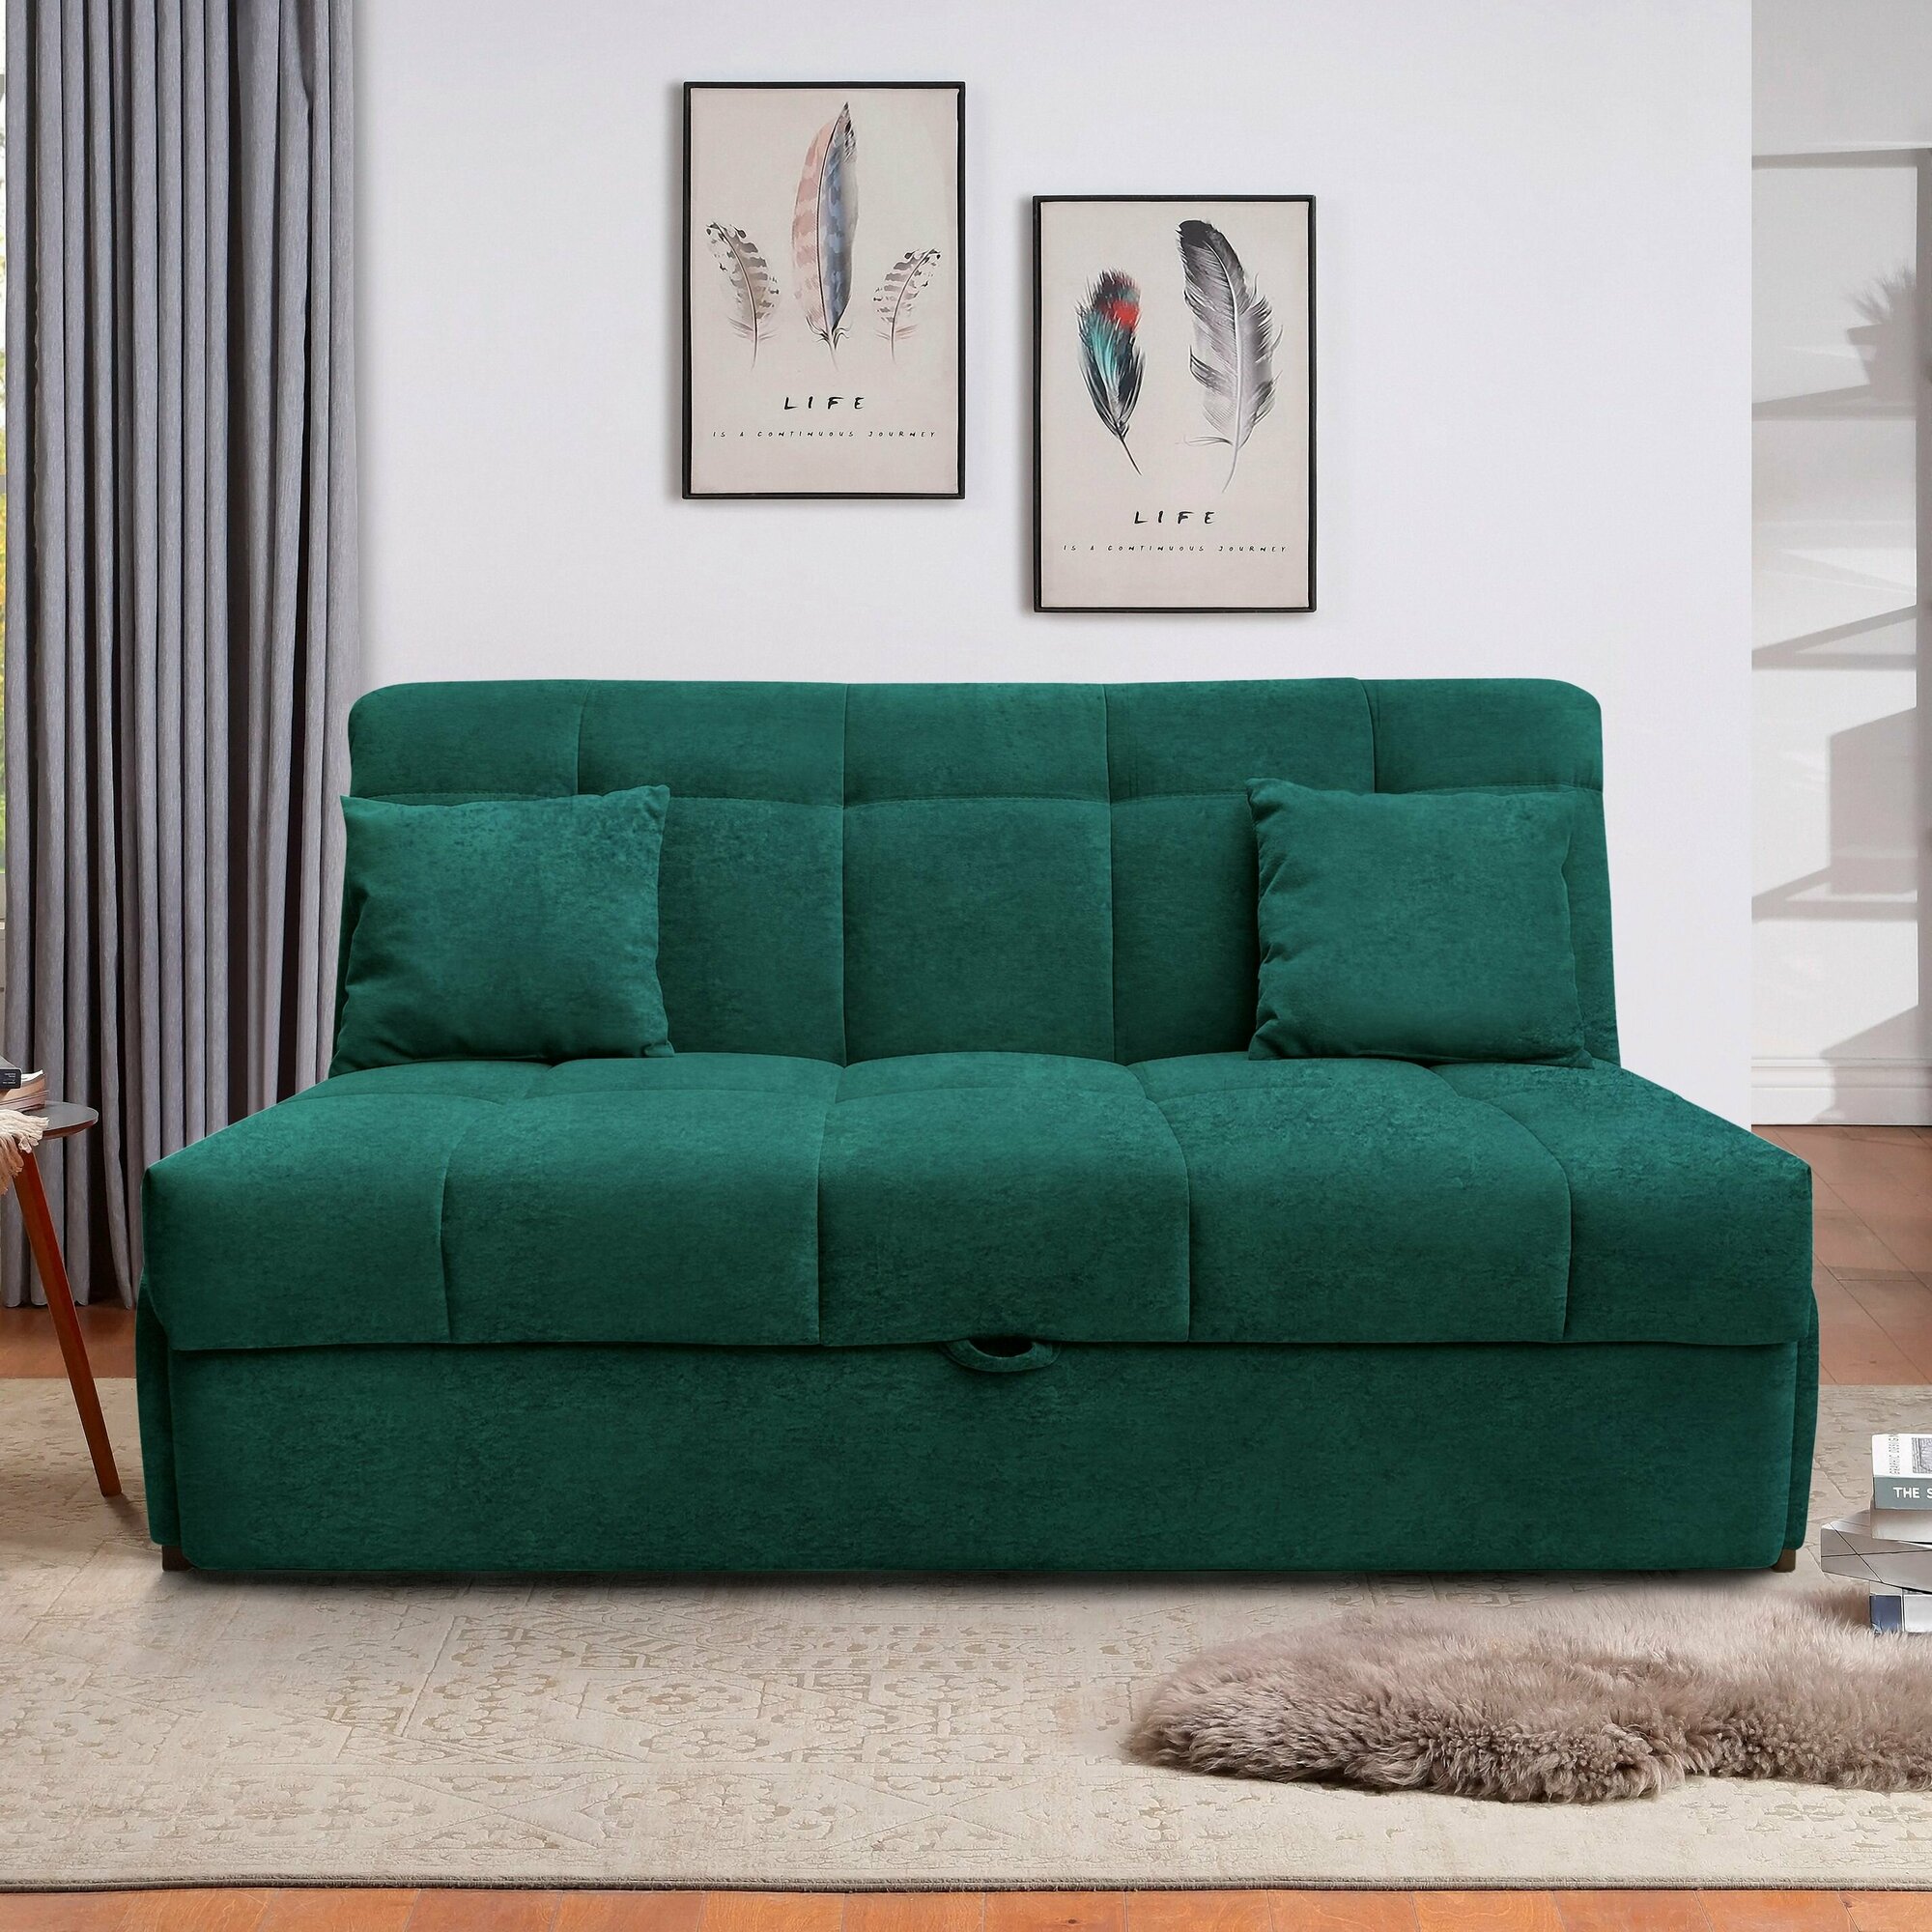 Пафос - диван-кровать Пафос (зеленый) с подушками, механизм аккордеон, без подлокотников, механизм аккордеон, 145х115х87 см